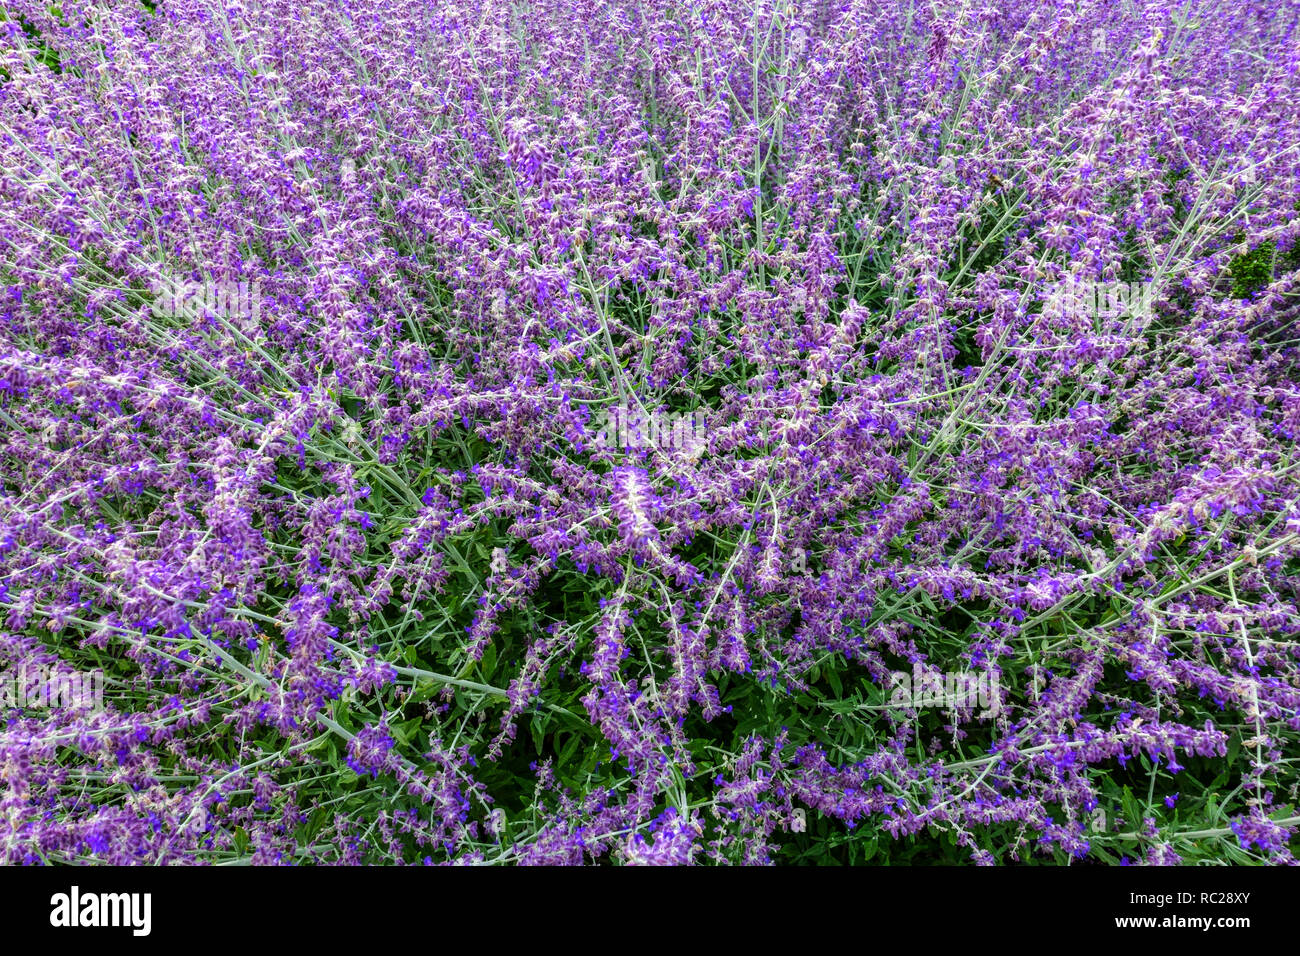 Aromatic shrub, Russian Sage Perovskia atriplicifolia Purple Garden Flowers shrubby Salvia yangii lavender colour Stock Photo